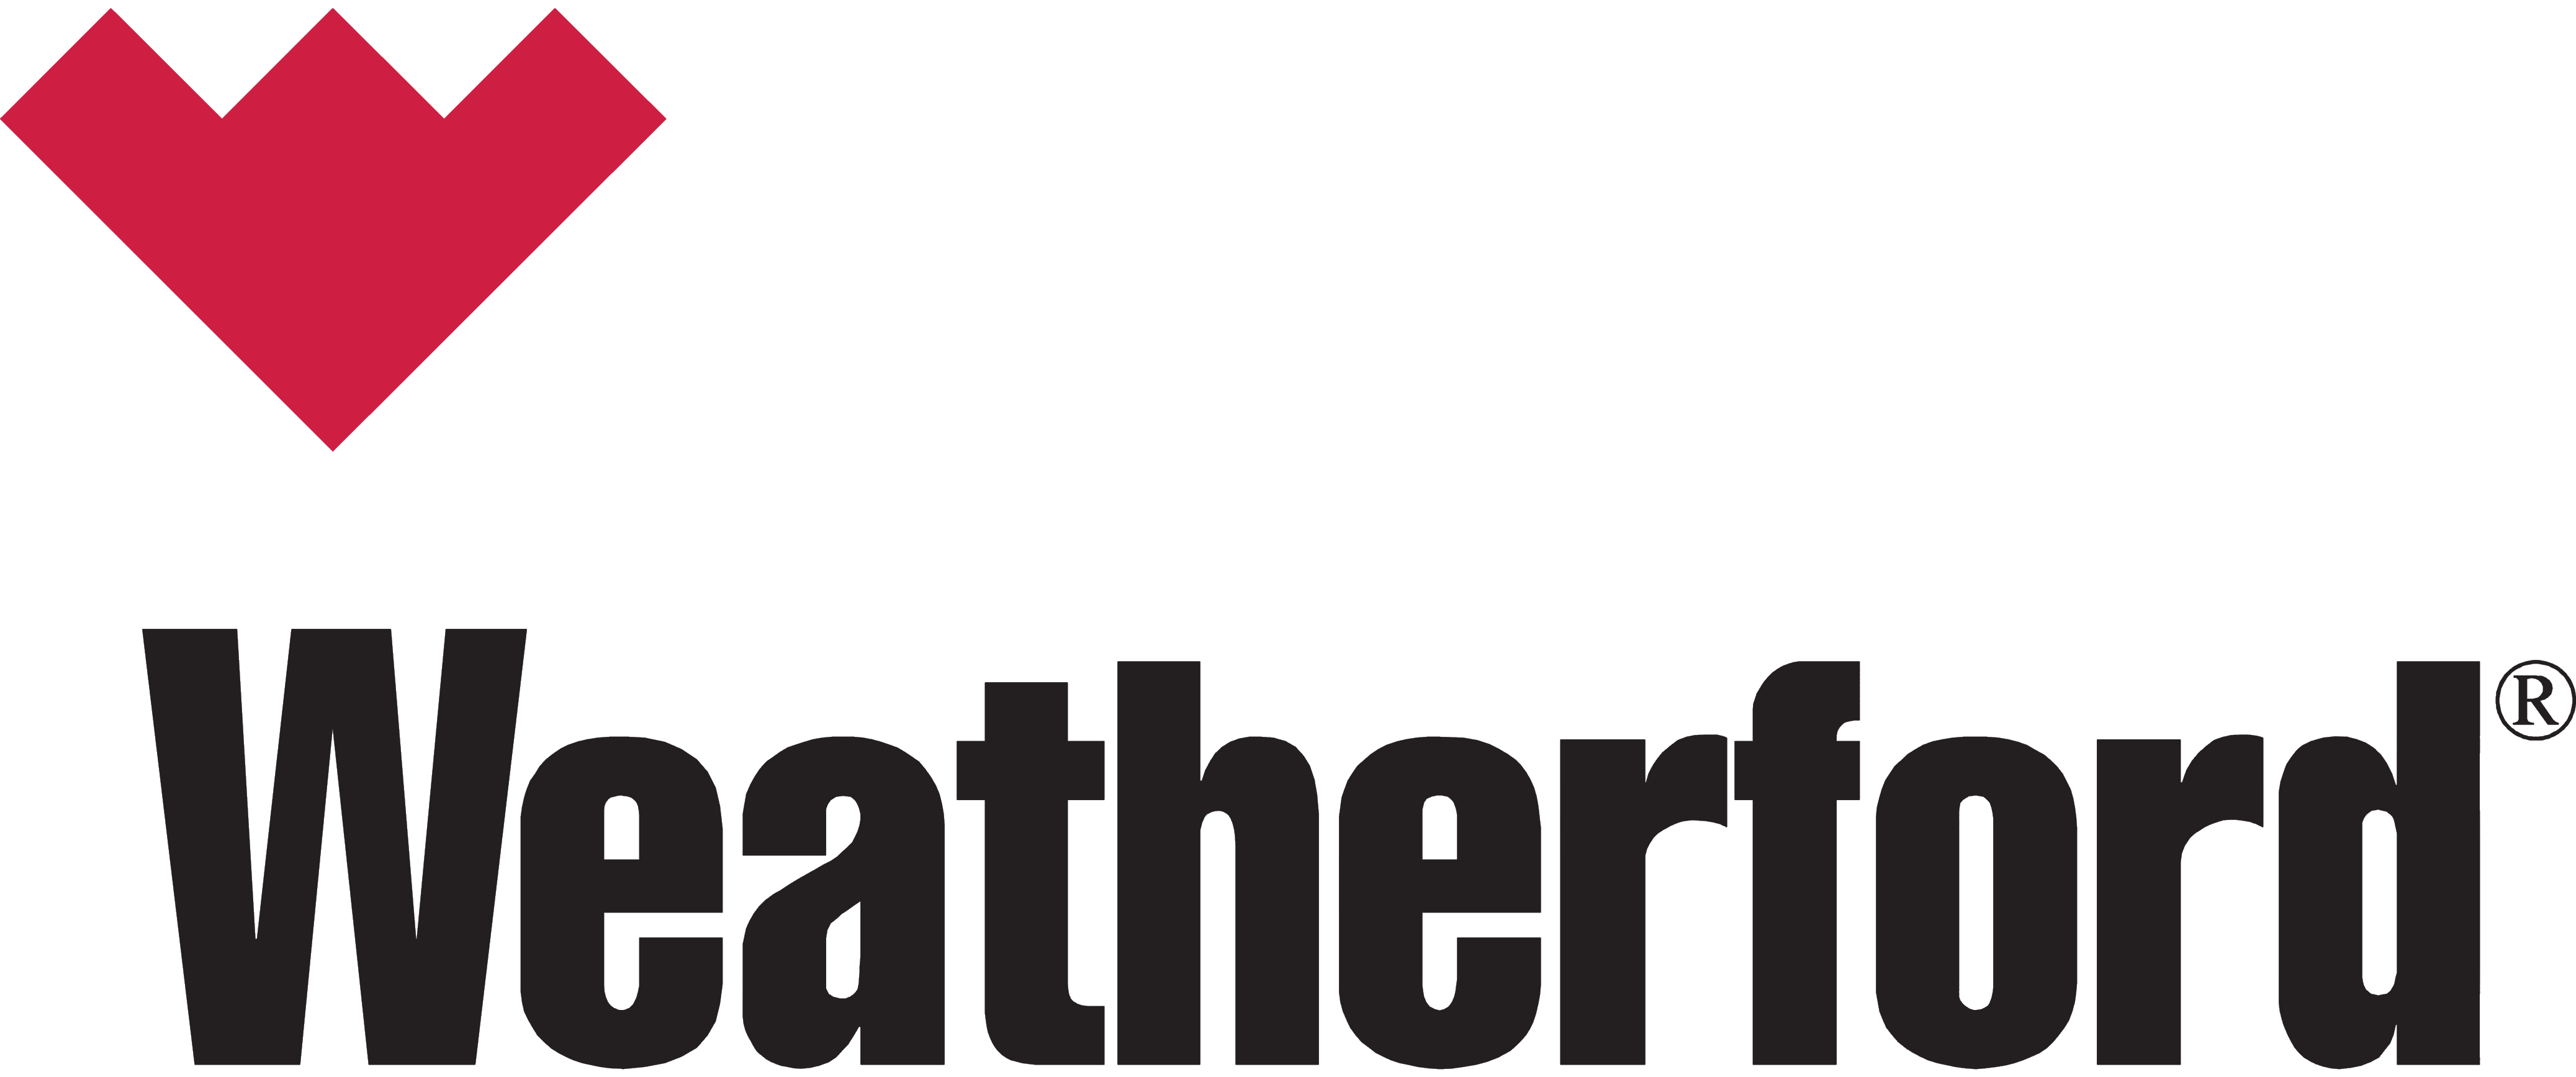 Weatherford logo, logotype